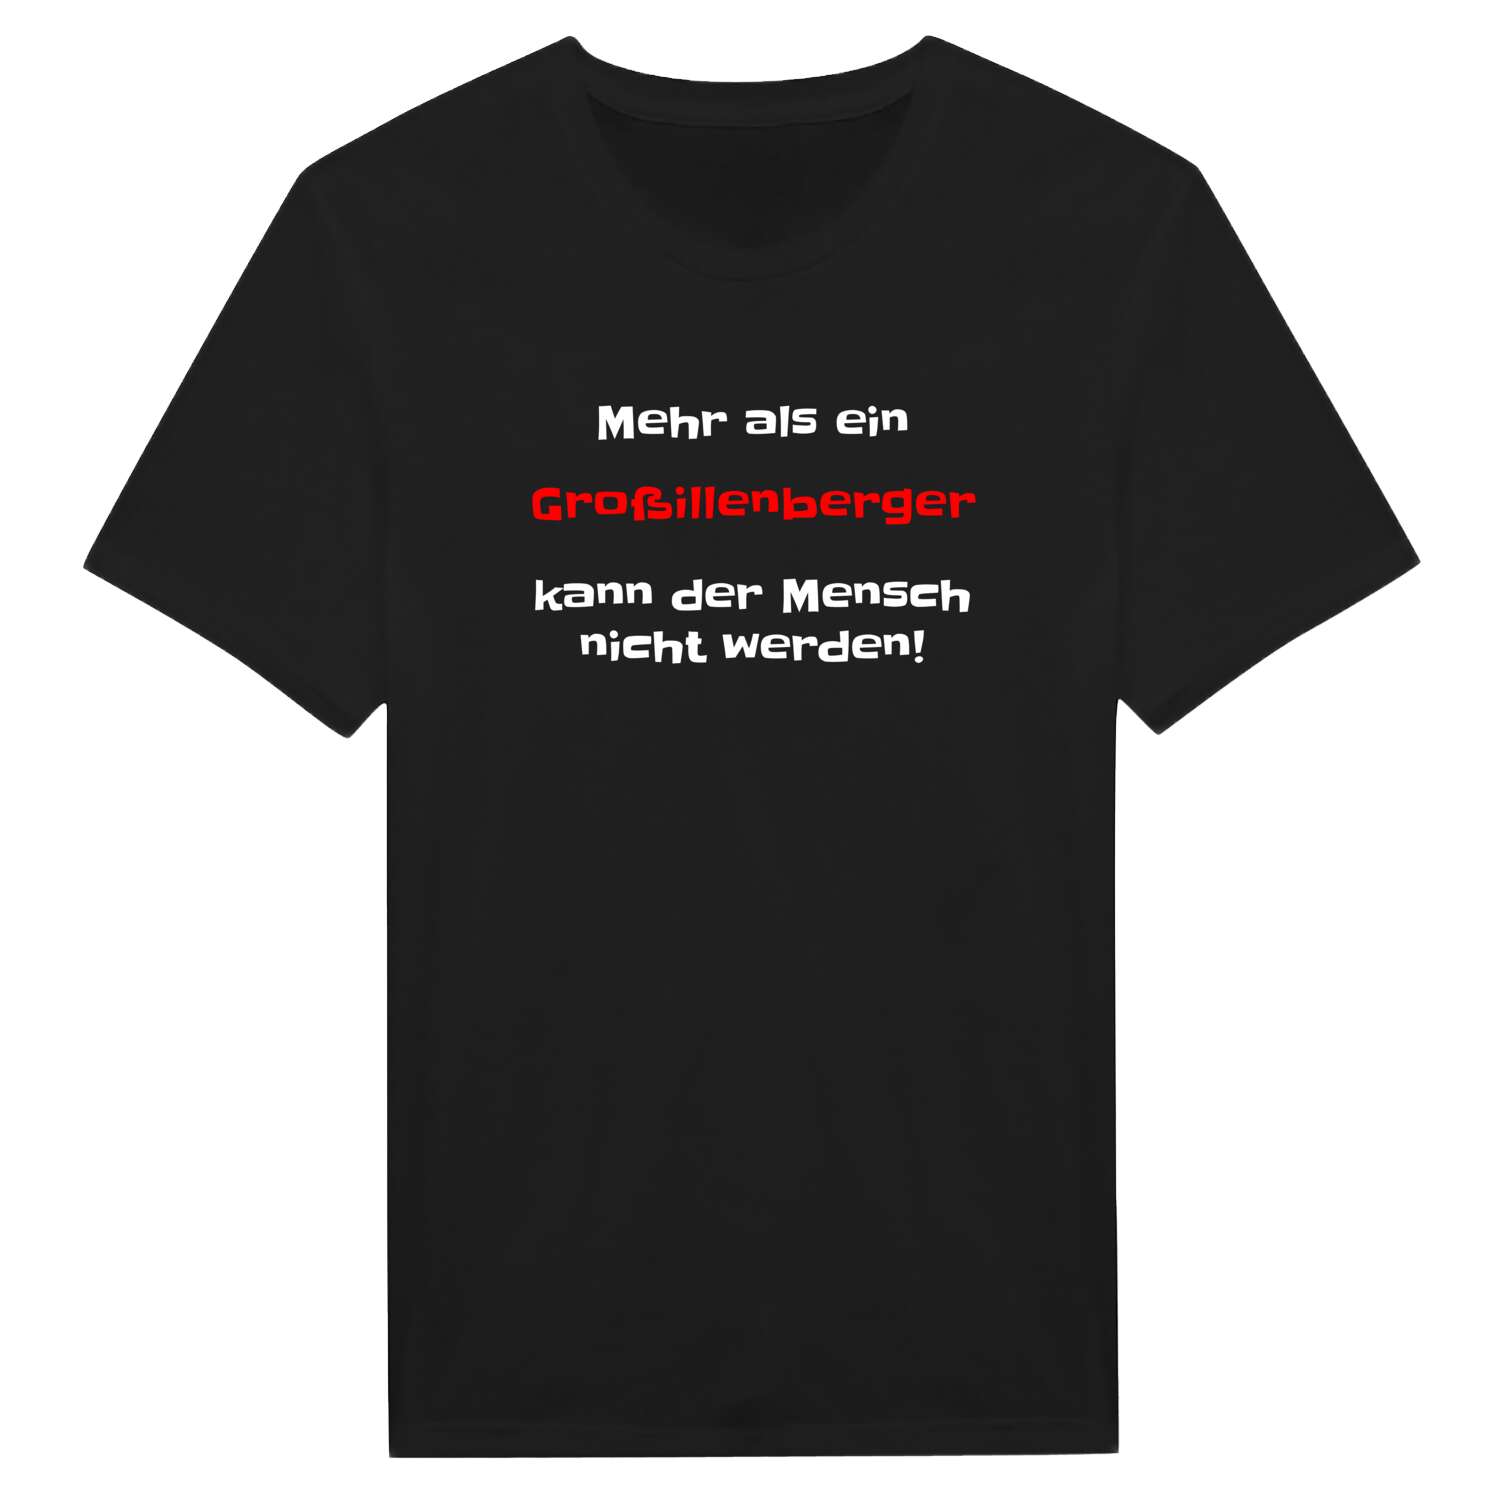 Großillenberg T-Shirt »Mehr als ein«